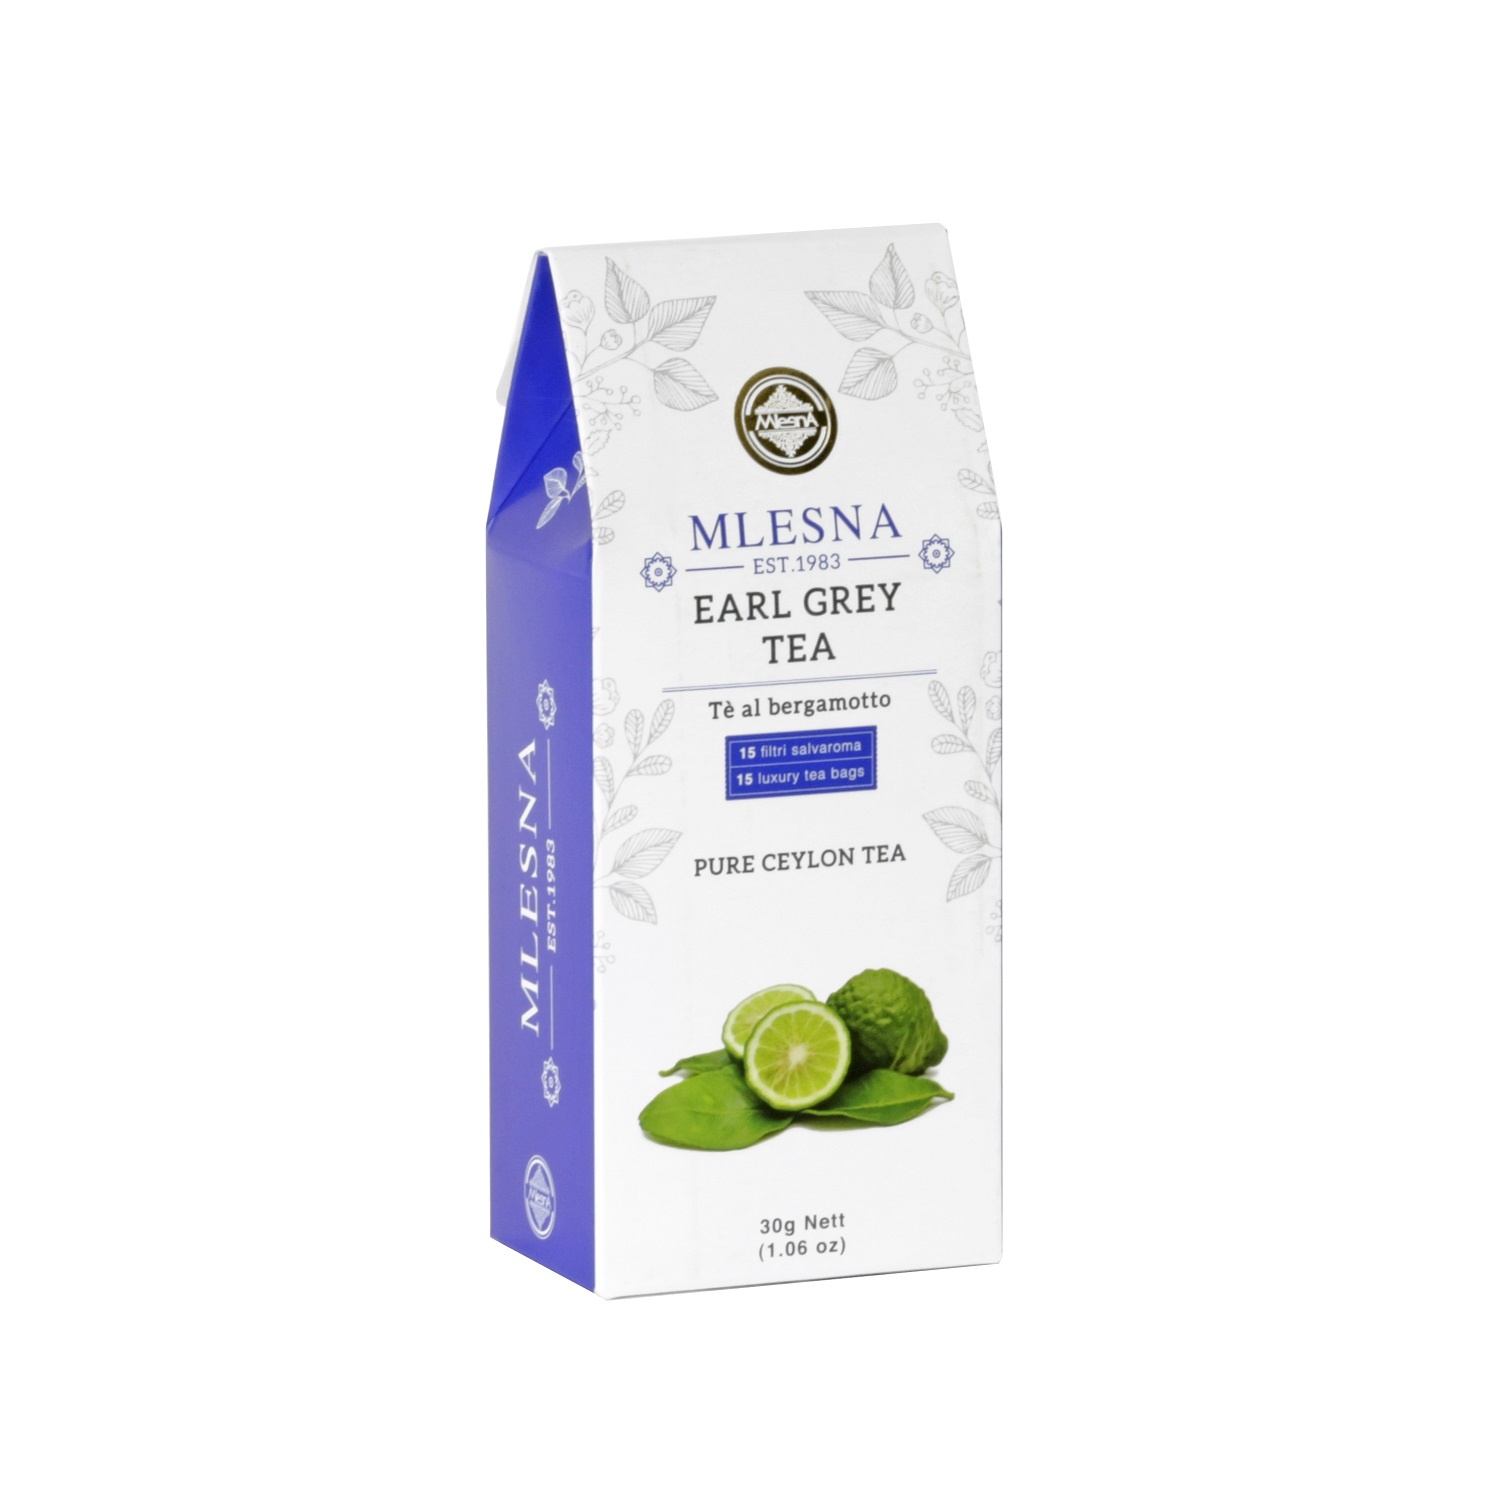 Čaje Mlesna Cejlonský černý čaj nejvyšší kvality s přírodní esencí bergamotu MLESNA (Ceylon) Ltd. pravý čaj z Cejlonu